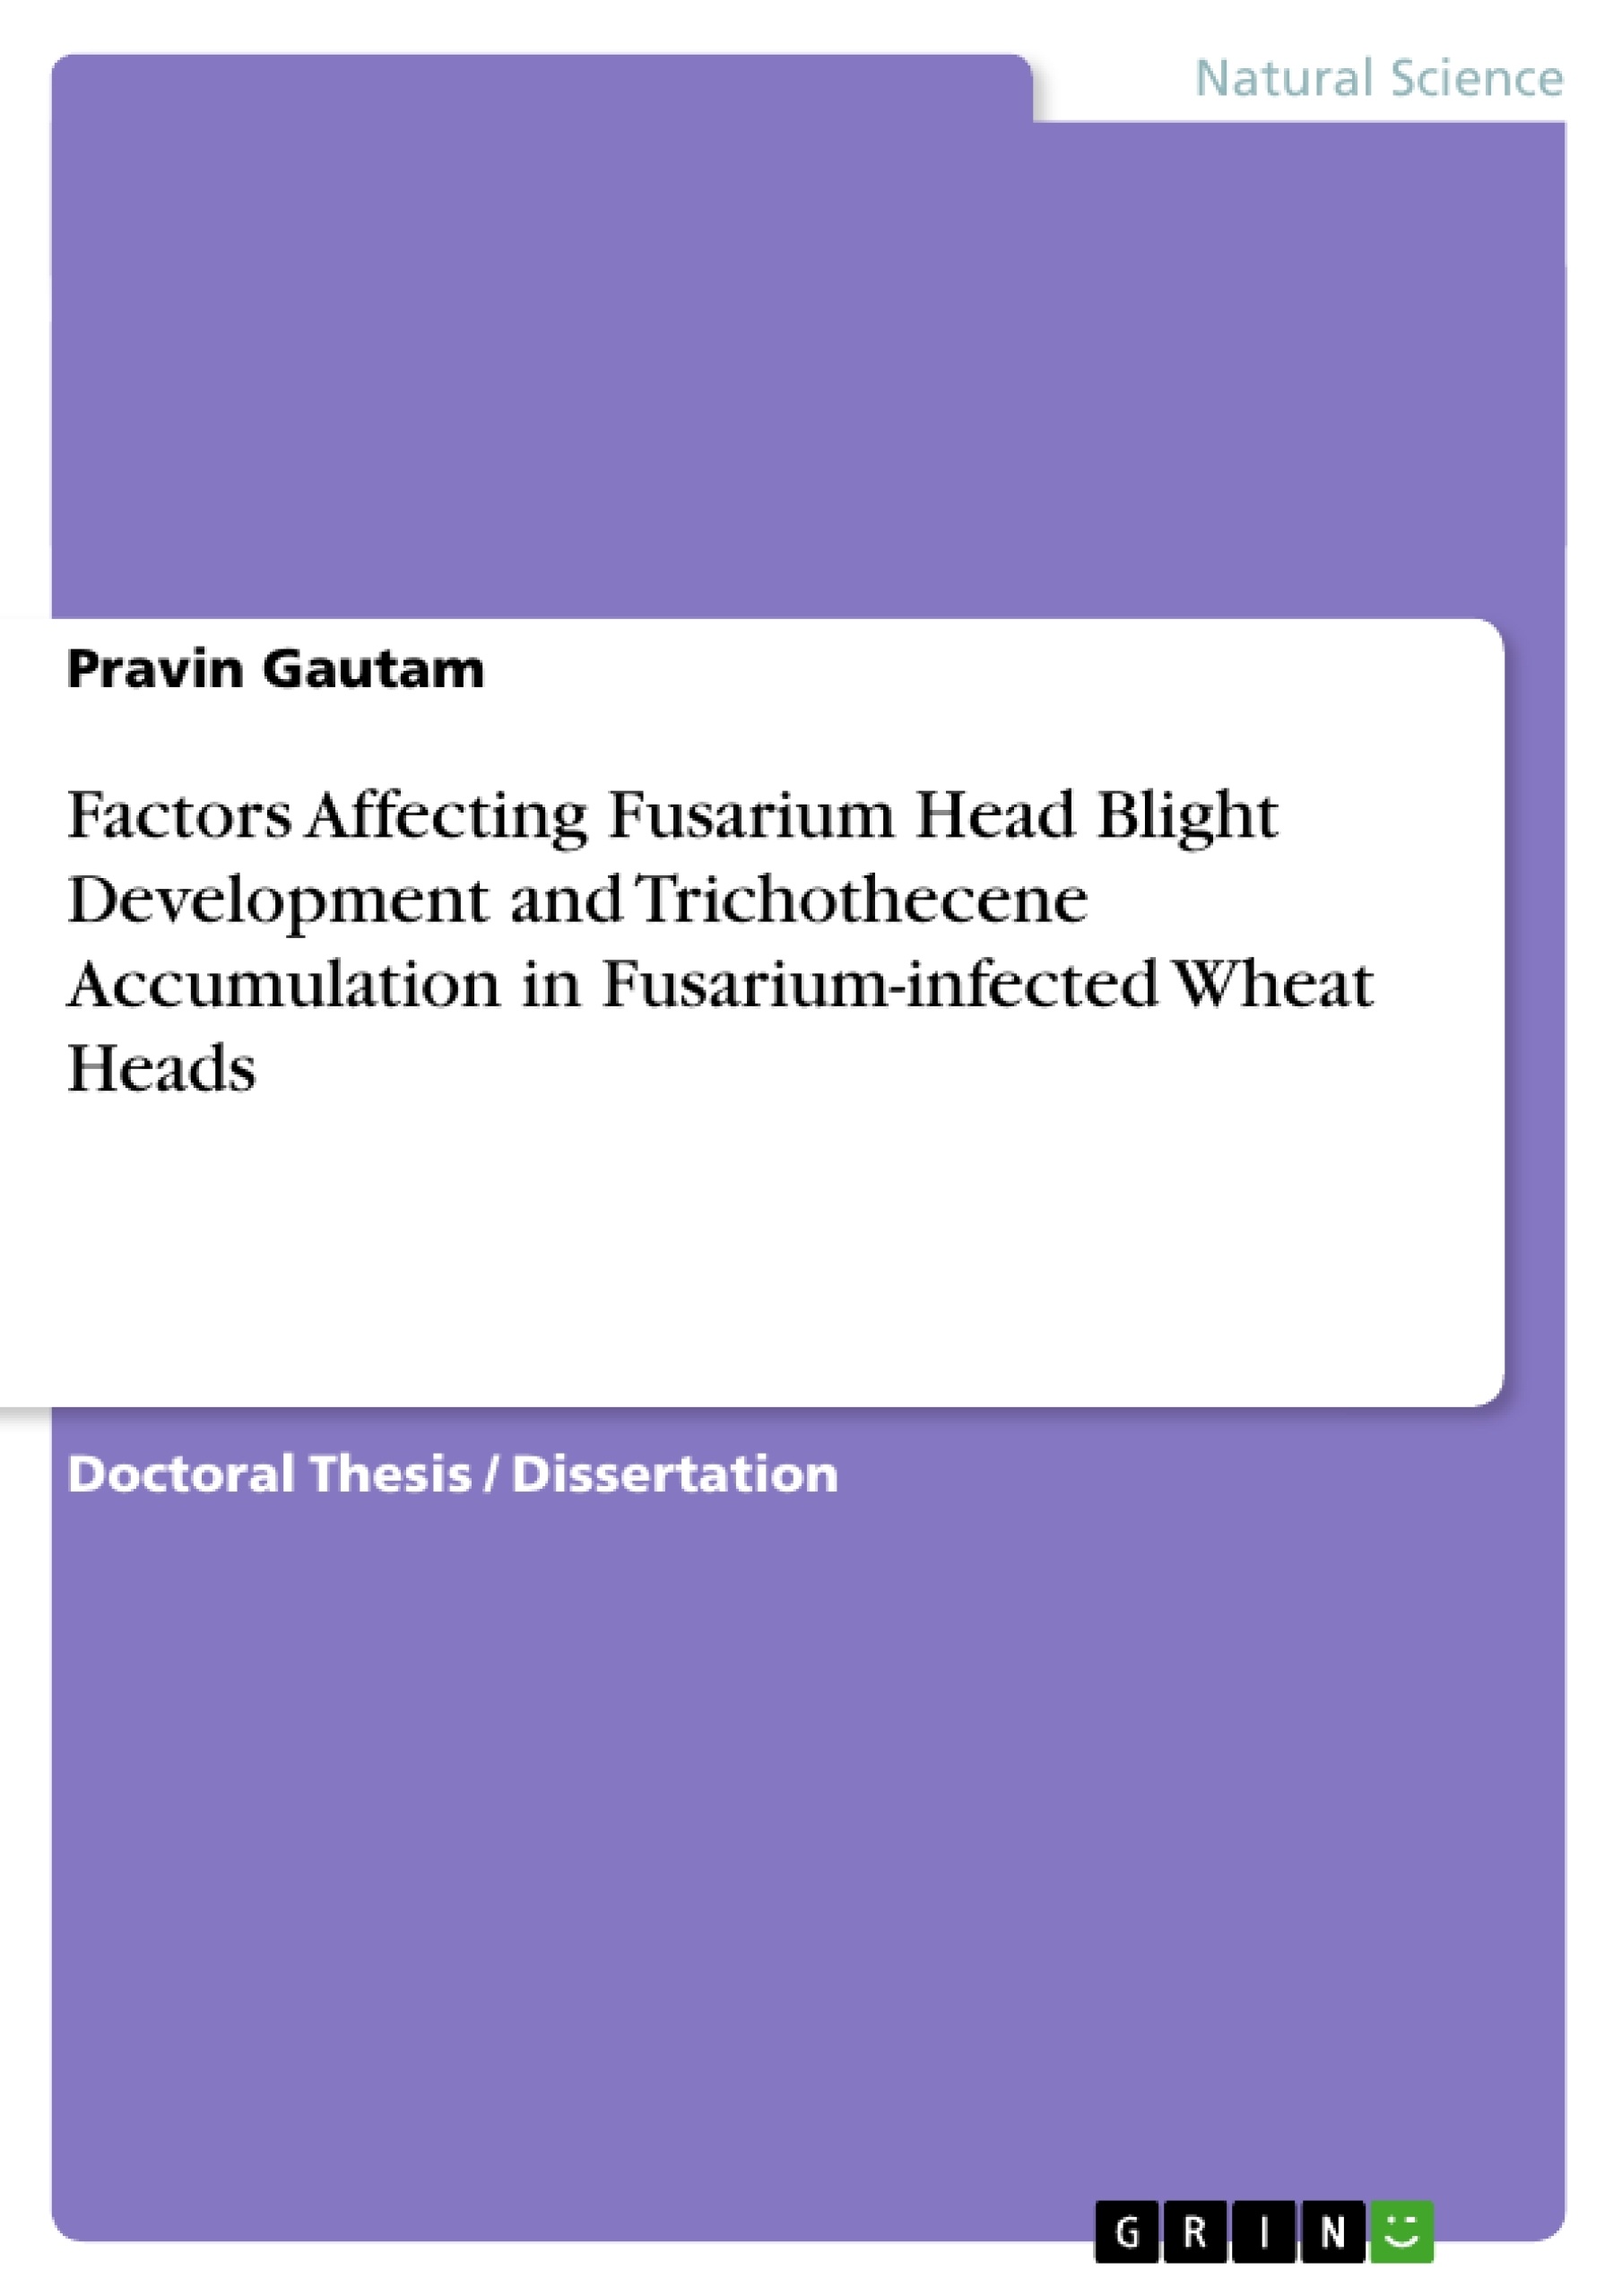 Titre: Factors Affecting Fusarium Head Blight Development and Trichothecene Accumulation in Fusarium-infected Wheat Heads